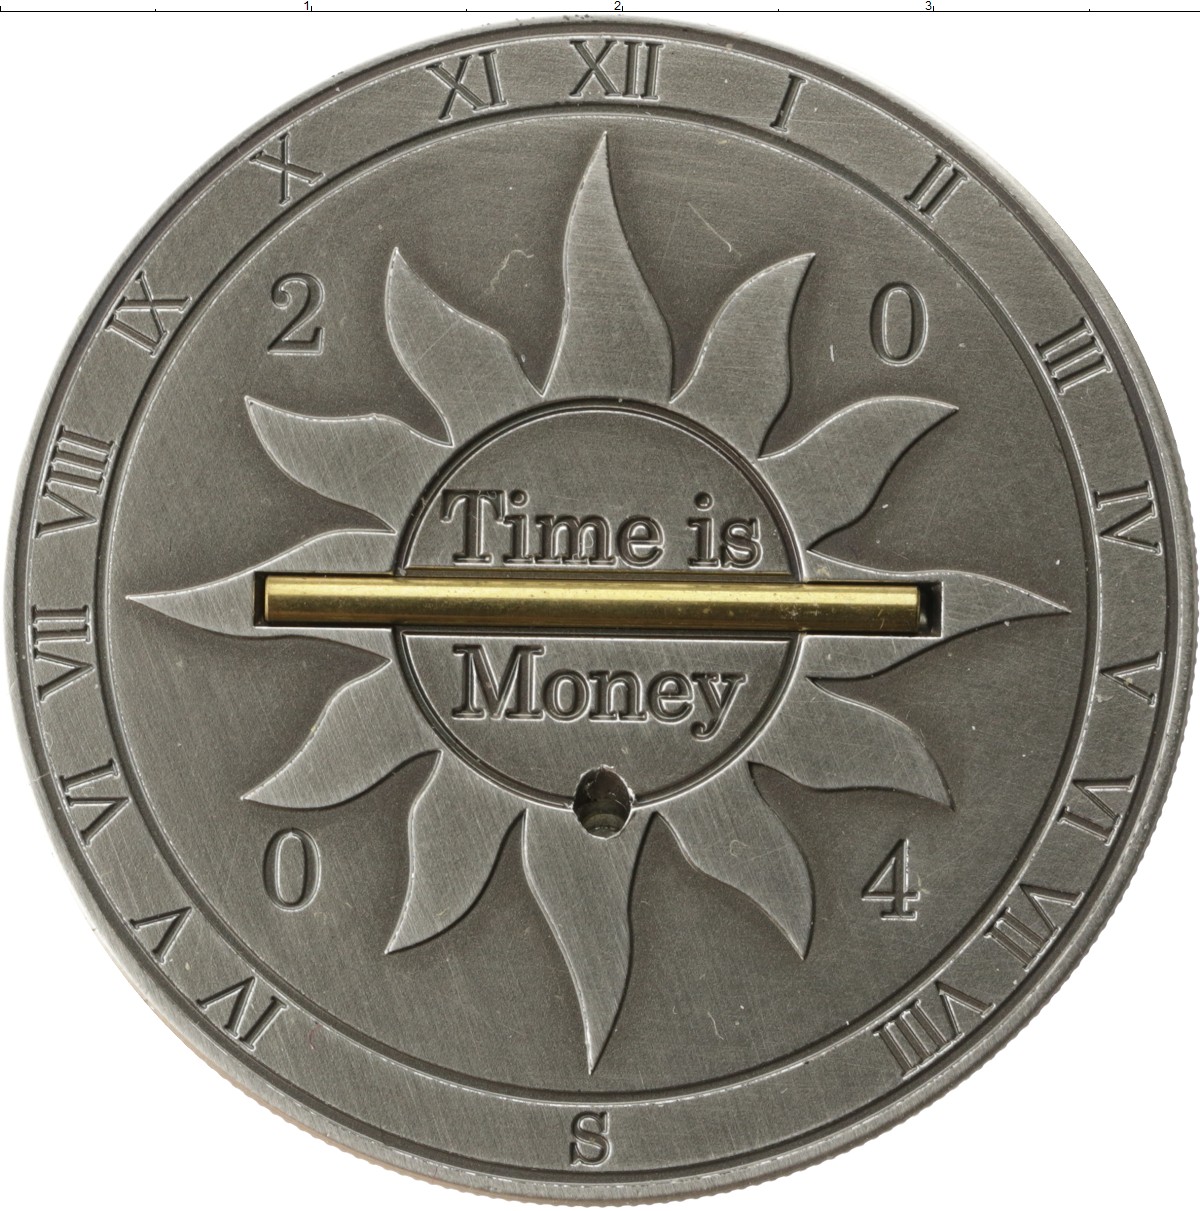 Mnt монета. Монета солнечные часы. Монета солнечные часы Либерия. Деньги Либерии. Монета с солнечными часами.